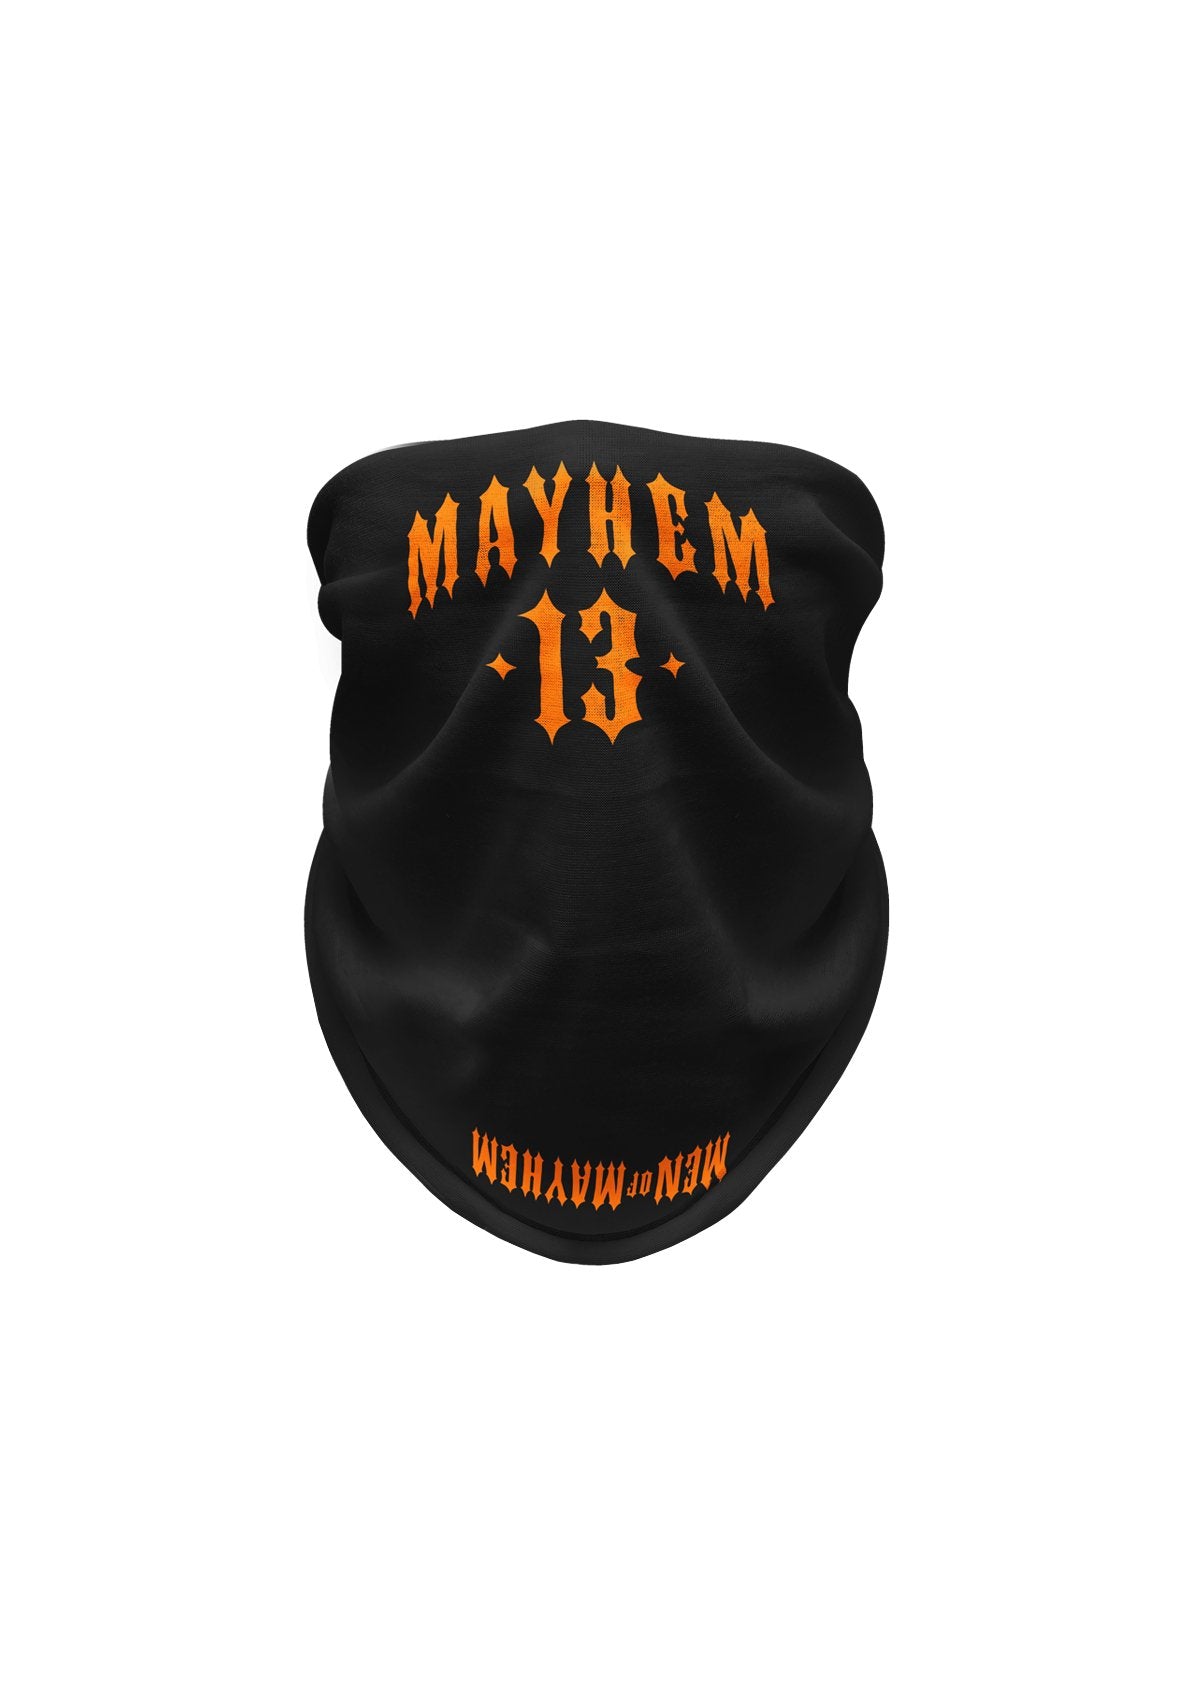 Tube Mayhem 13 S/O